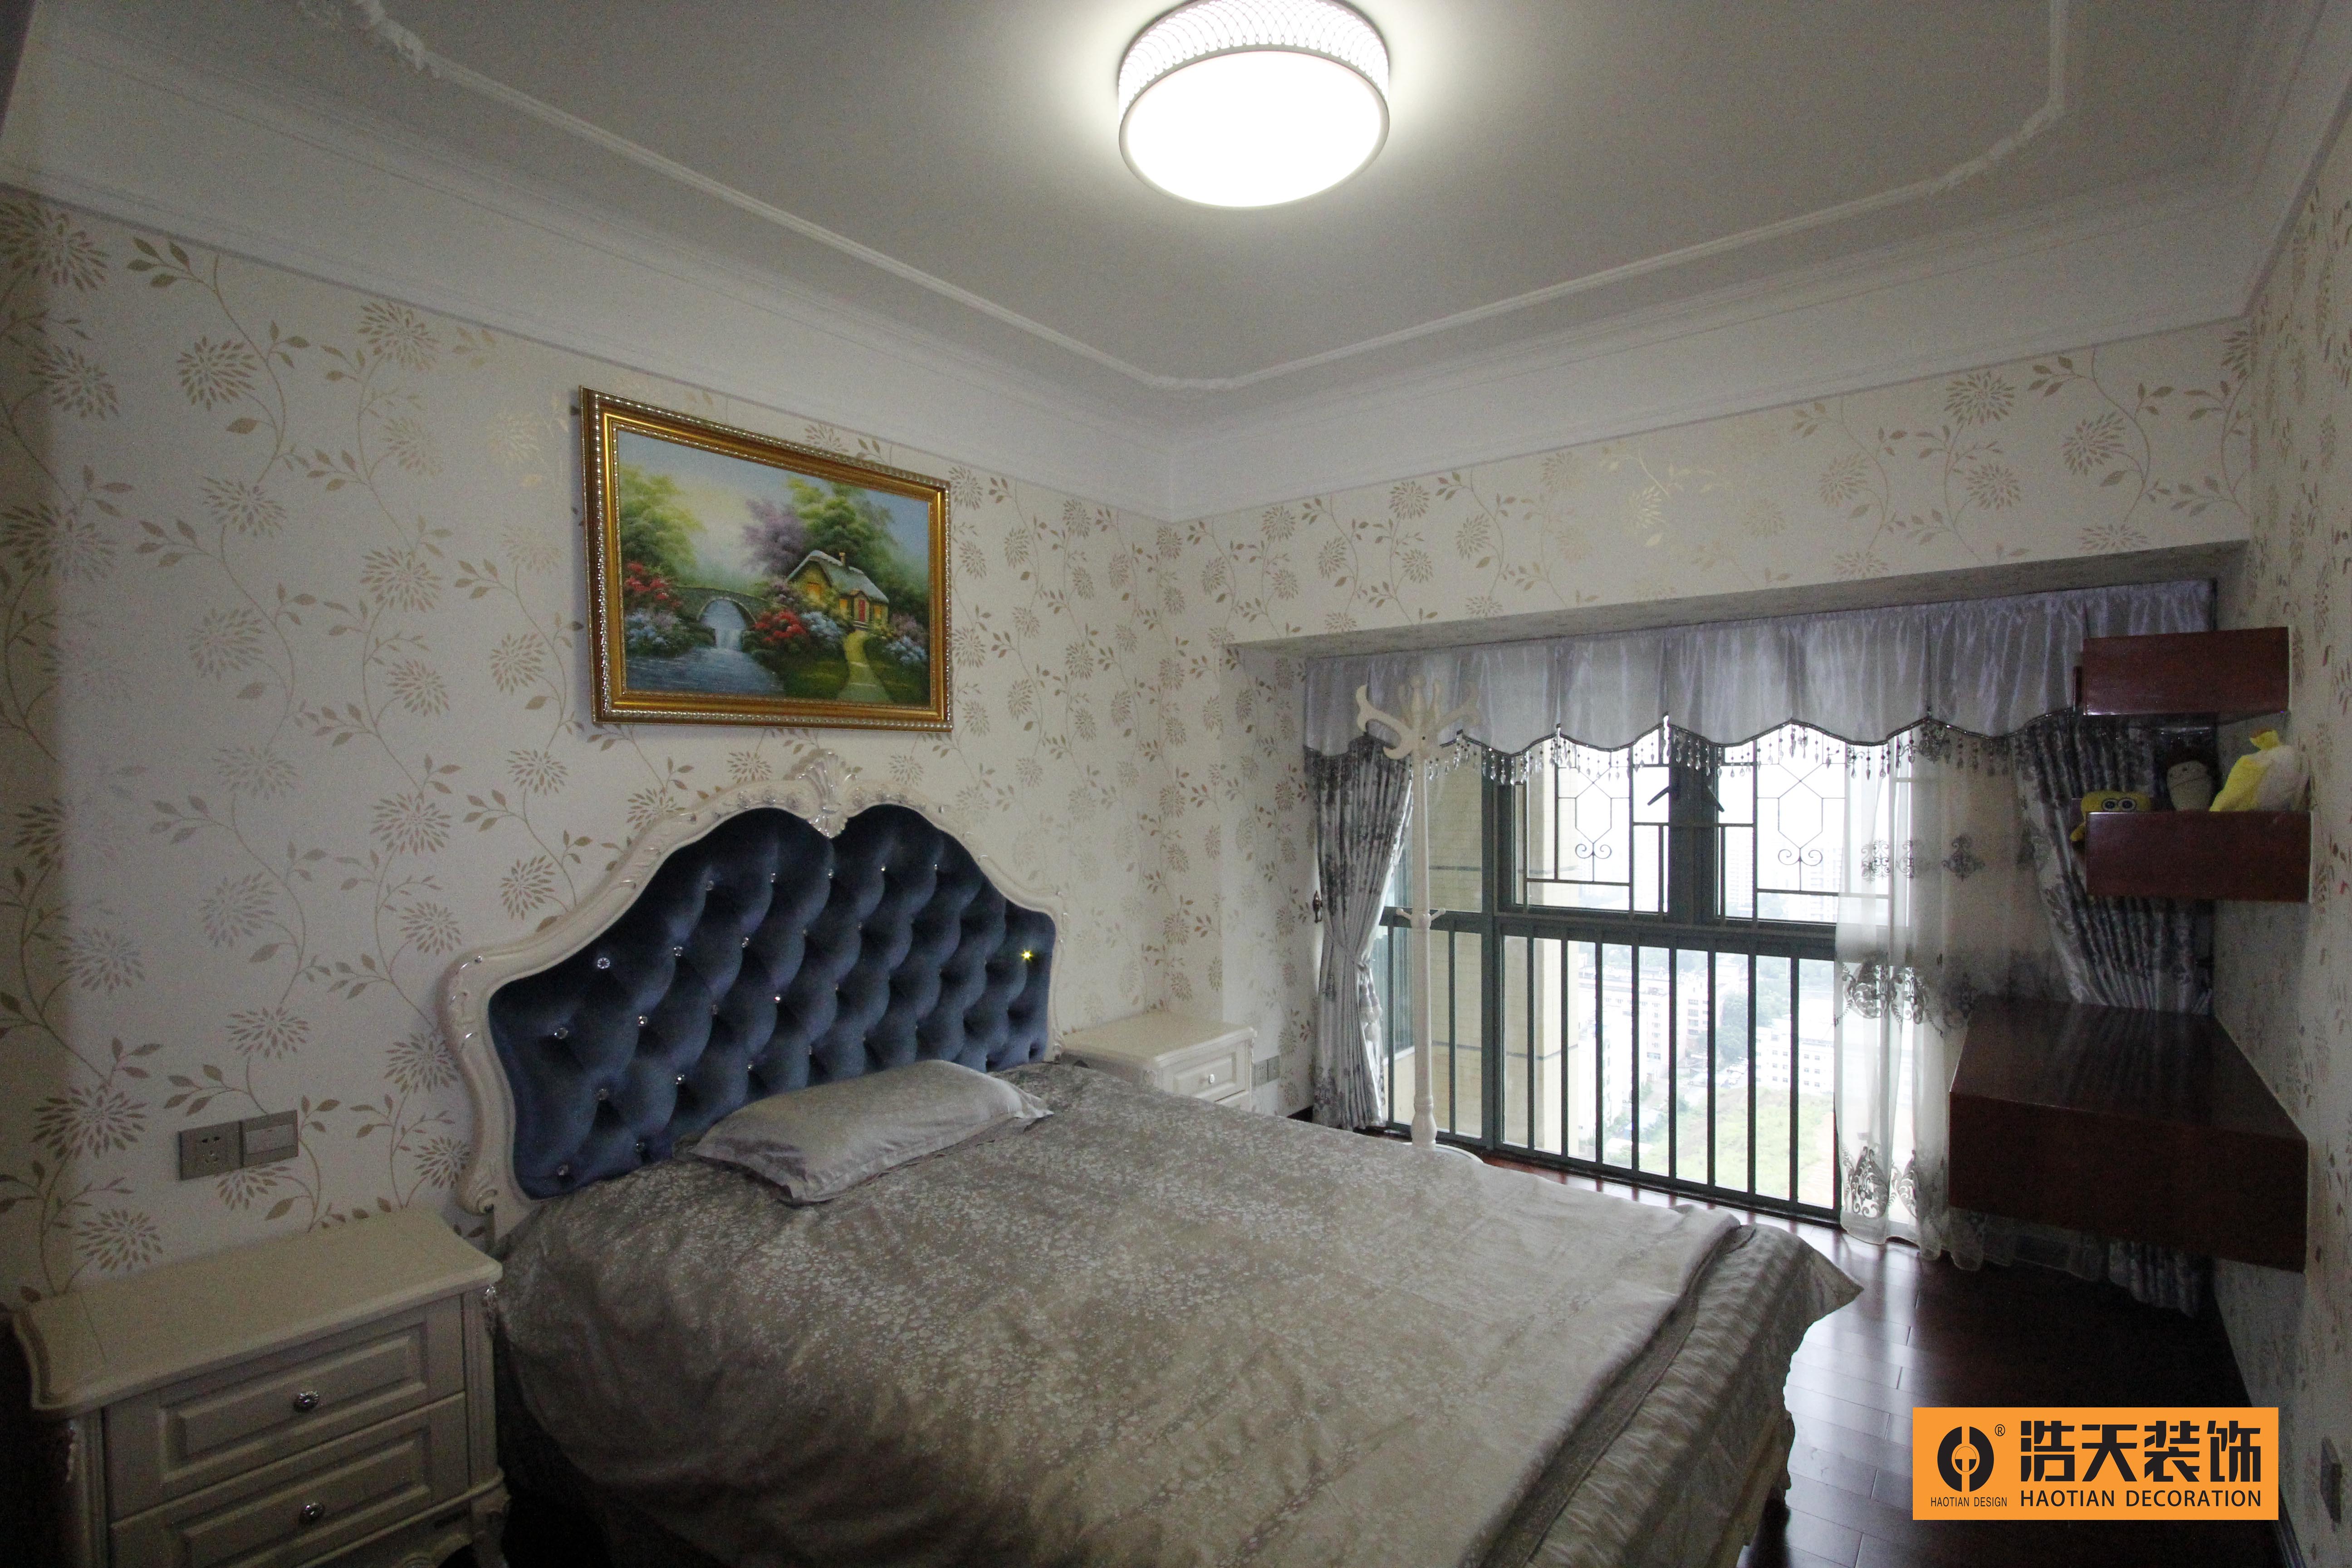 简约 小资 卧室图片来自深圳市浩天装饰在居家的分享